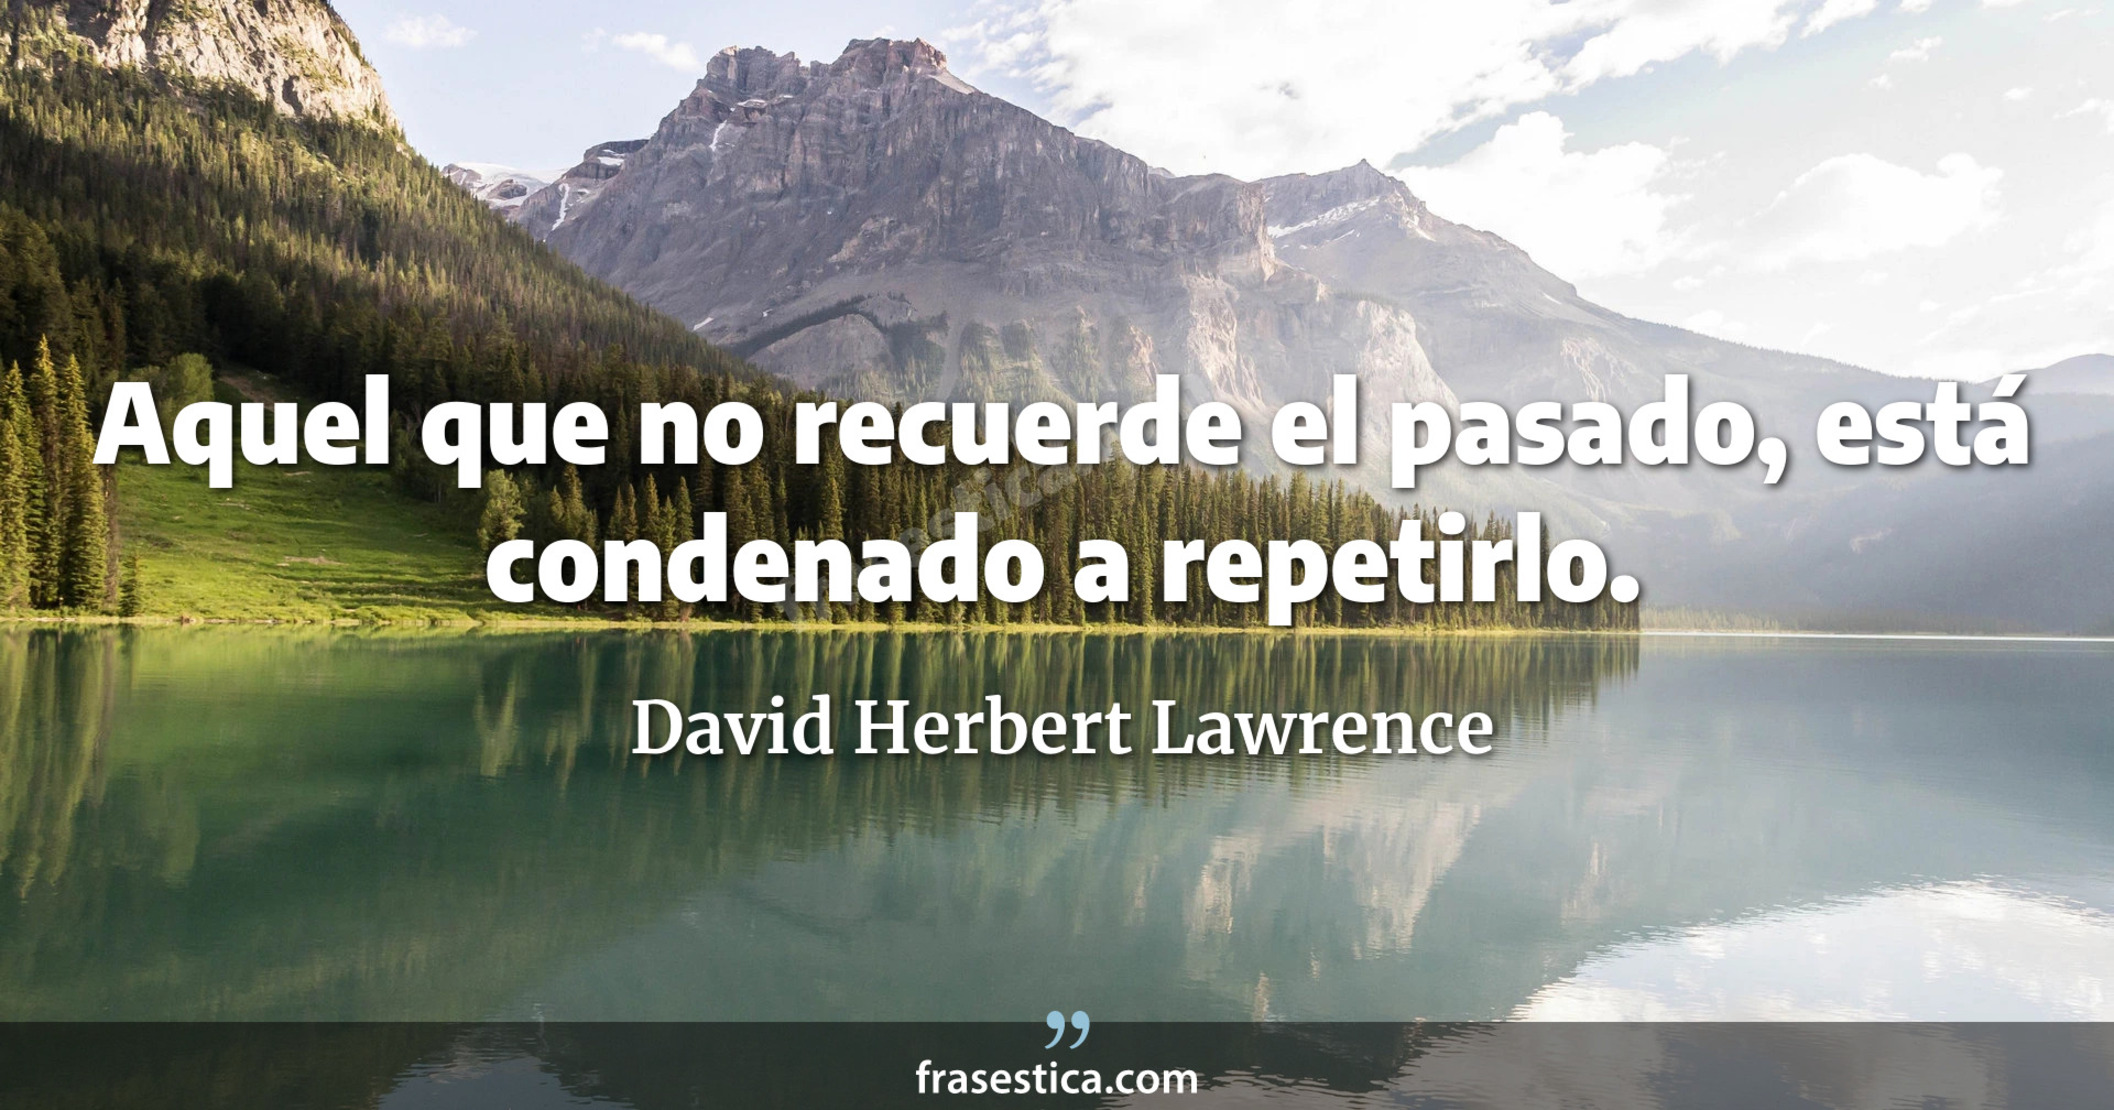 Aquel que no recuerde el pasado, está condenado a repetirlo. - David Herbert Lawrence